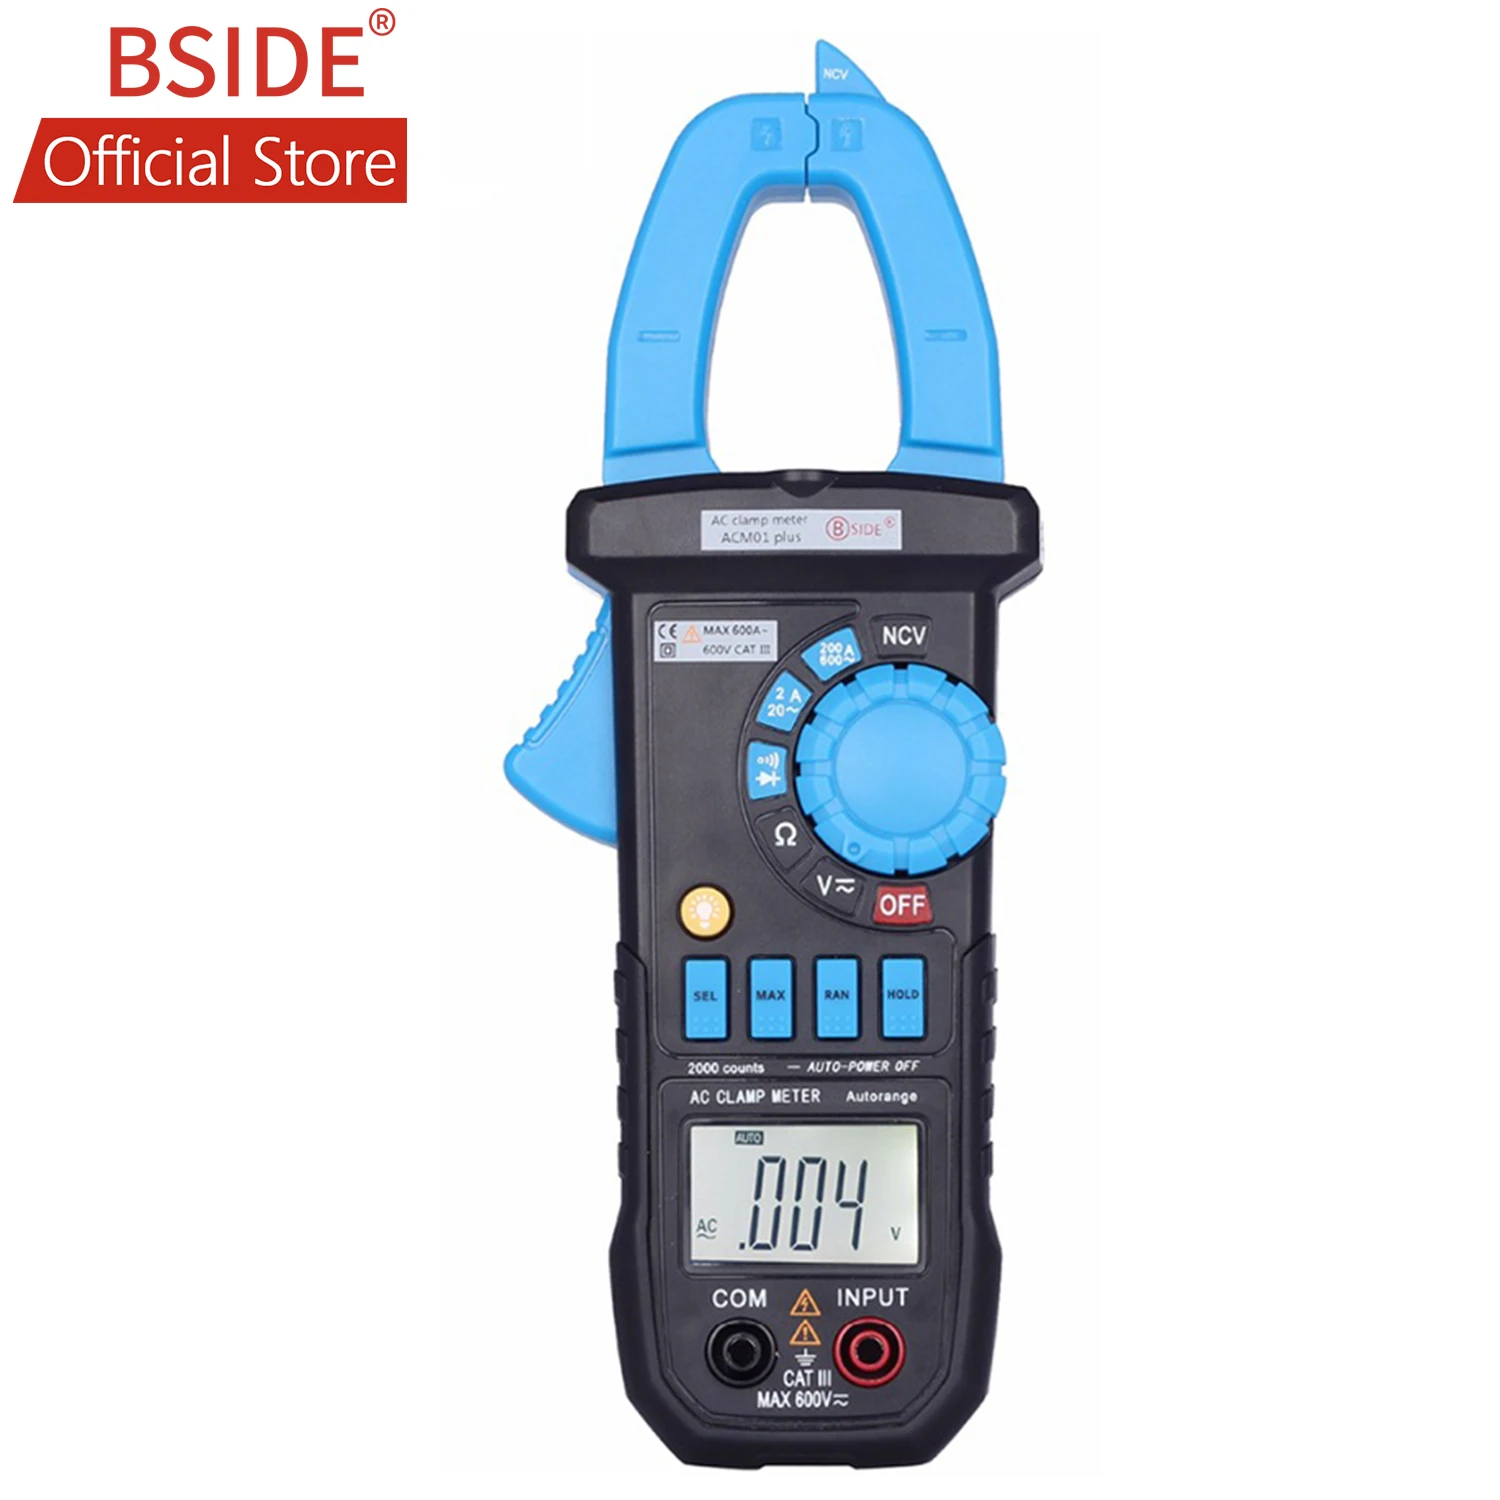 BSIDE 600A цифровой измеритель переменного тока ACM01 PLUS мультиметр индукционный сигнал напряжения